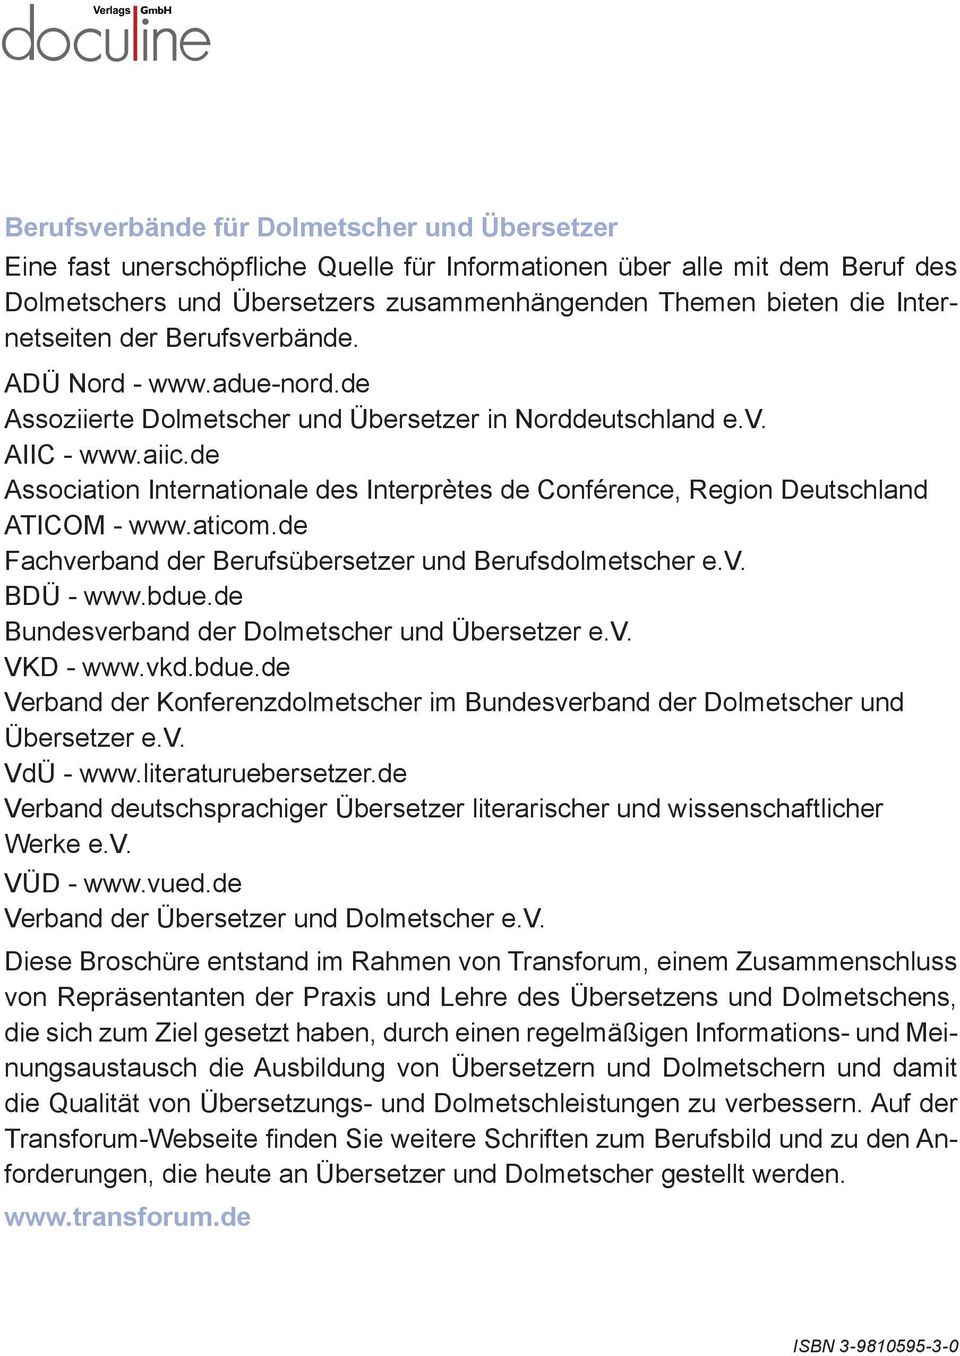 de Association Internationale des Interprètes de Conférence, Region Deutschland ATICOM - www.aticom.de Fachverband der Berufsübersetzer und Berufsdolmetscher e.v. BDÜ - www.bdue.